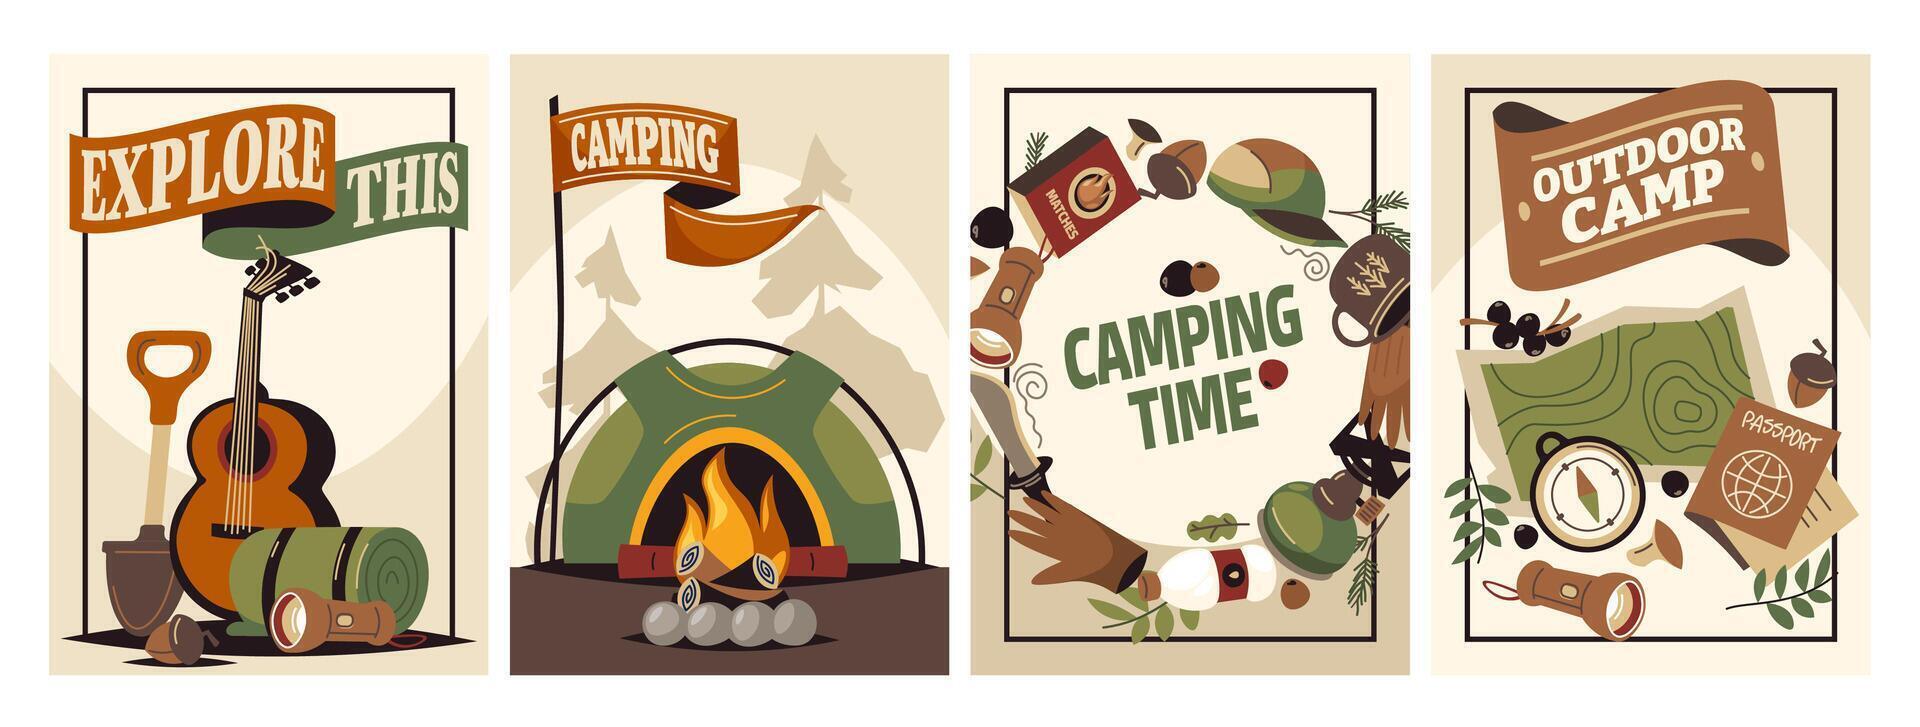 Wald Camping Poster. Sommer- draussen Aktivität Broschüre mit Wandern und Camping Logo, Natur Erholung Konzept. Vektor Flyer Banner